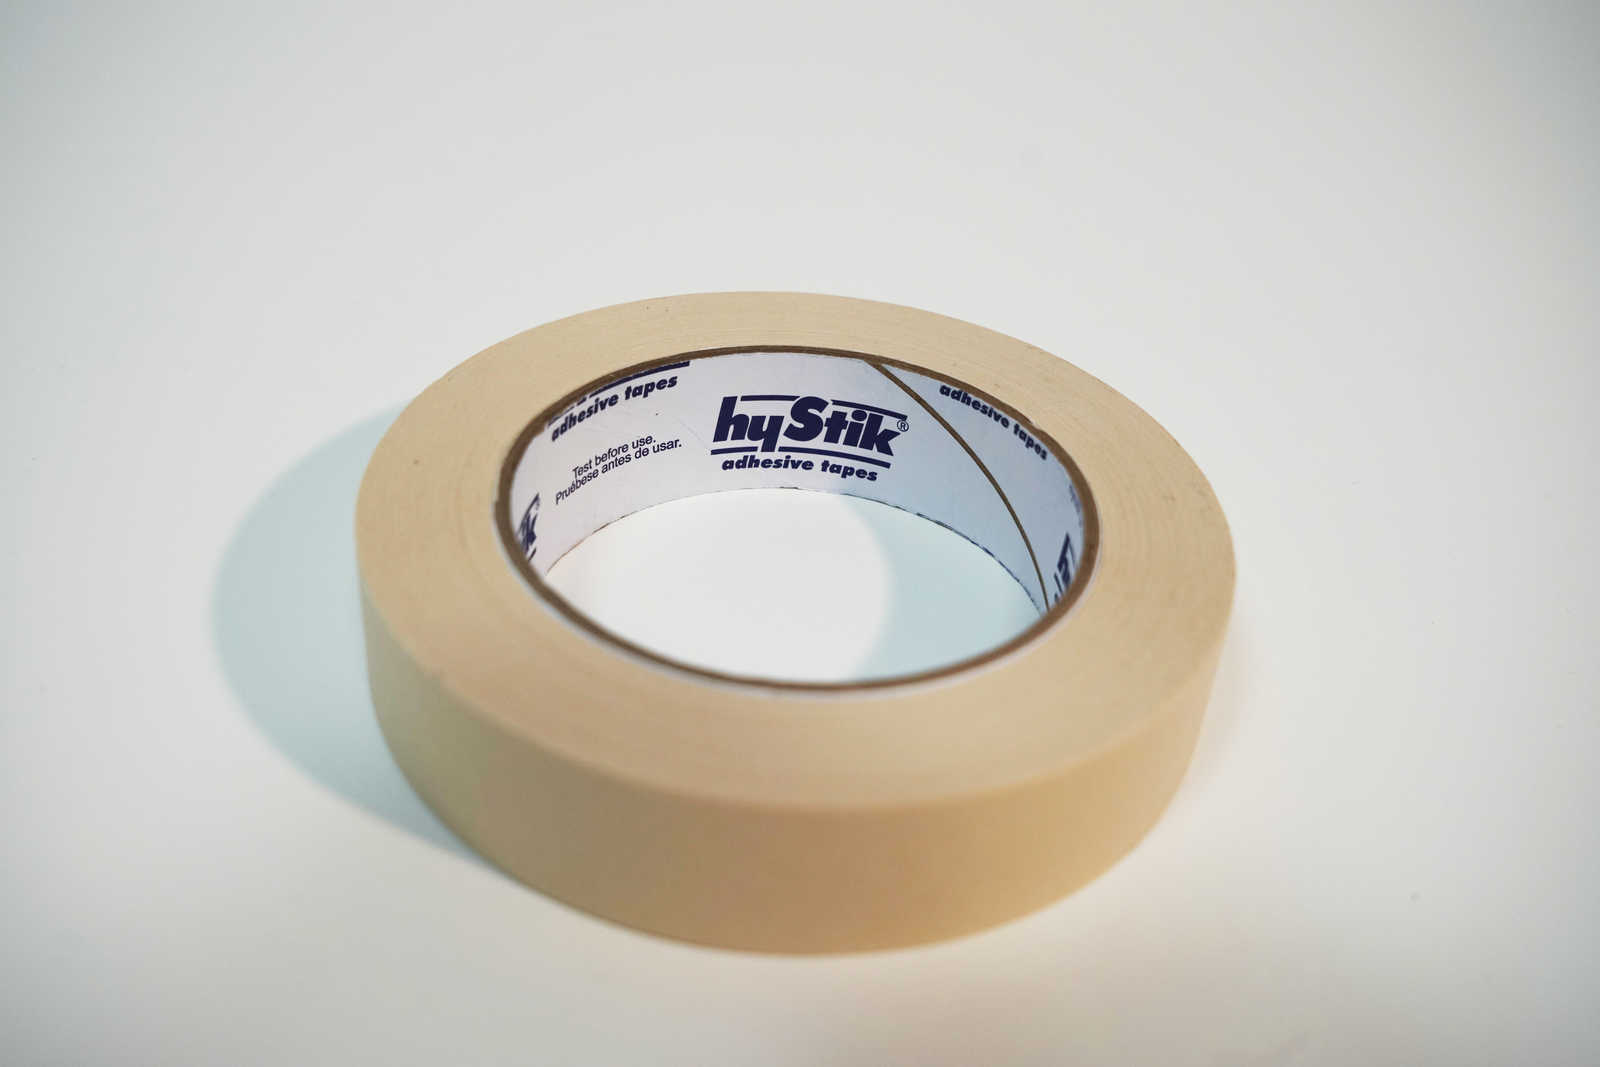             Crepe tape 25mm x 50m in cream
        